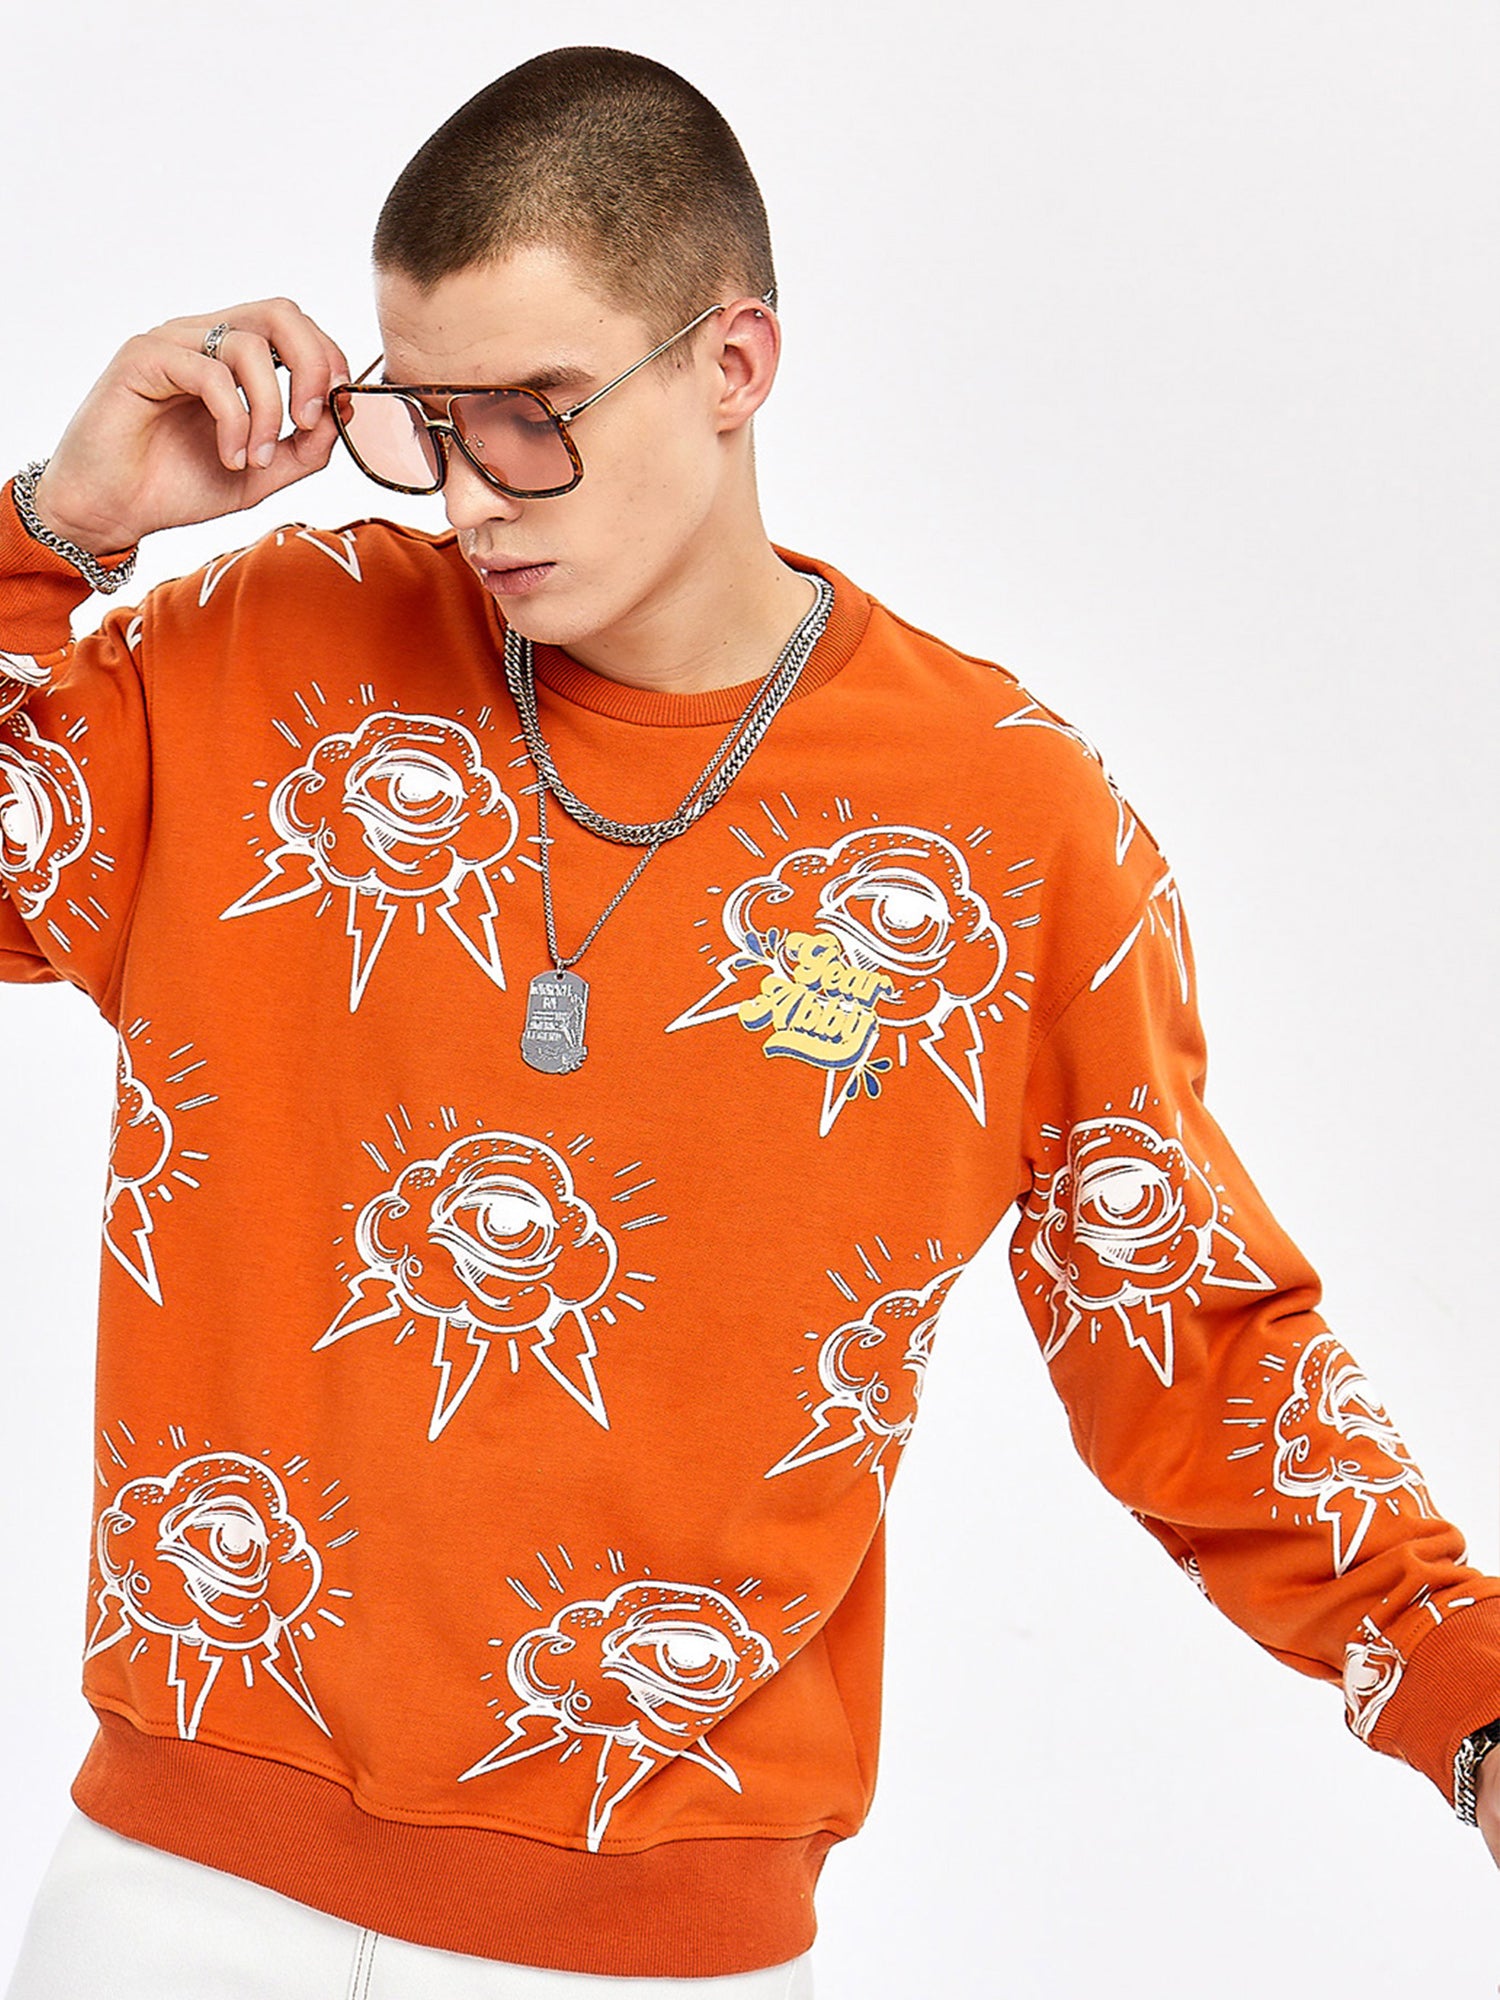 JUSTNOTAG Letterr Cotton Rundhals Orange Sweatshirts Tops